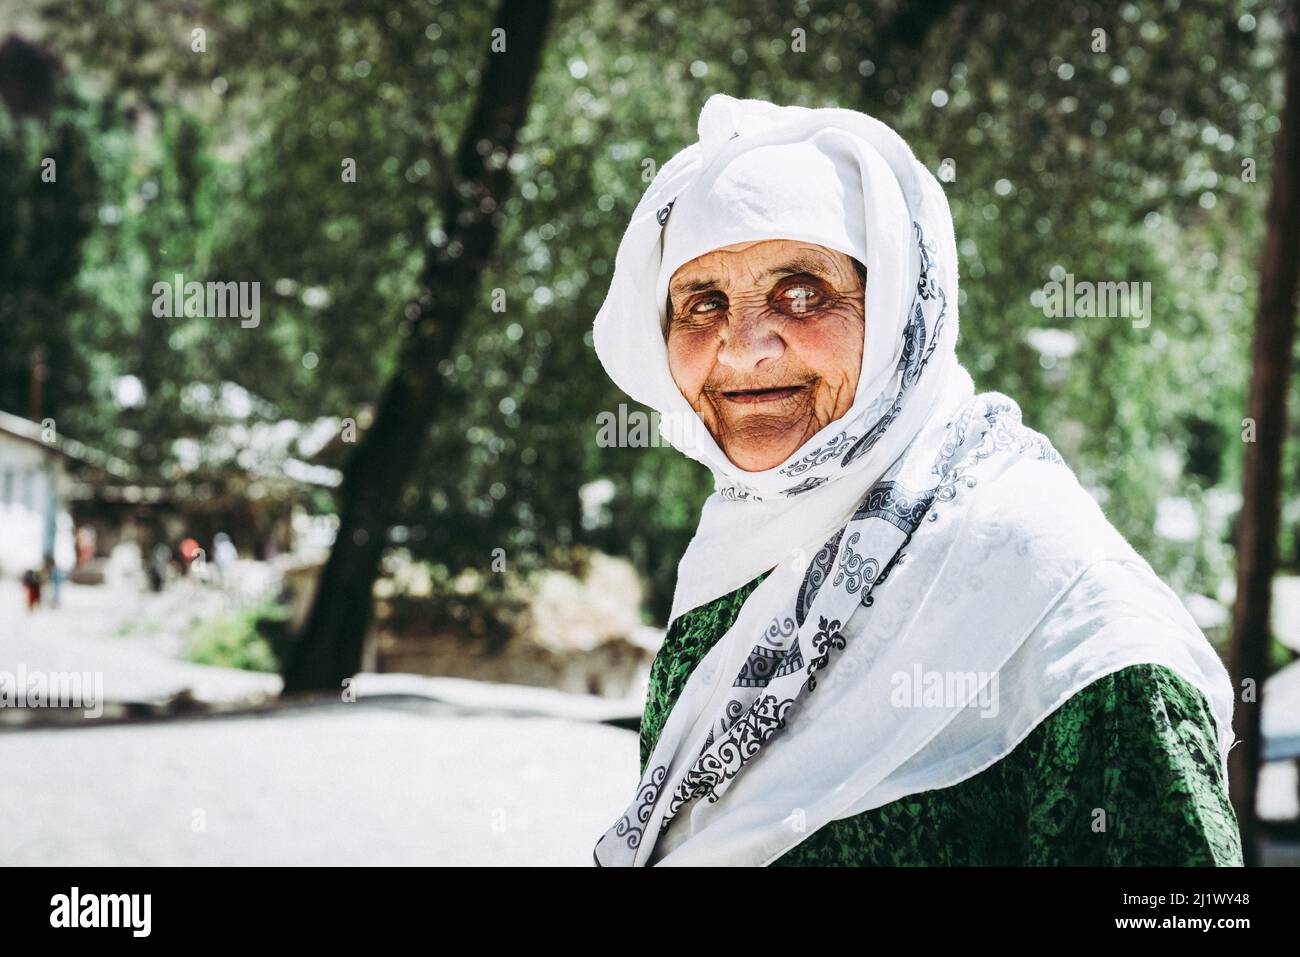 august 26, 2016, Margib village, Tajikistan: A portrait of an elderly woman in a small village in Yaghnob region of Tajikistan Stock Photo